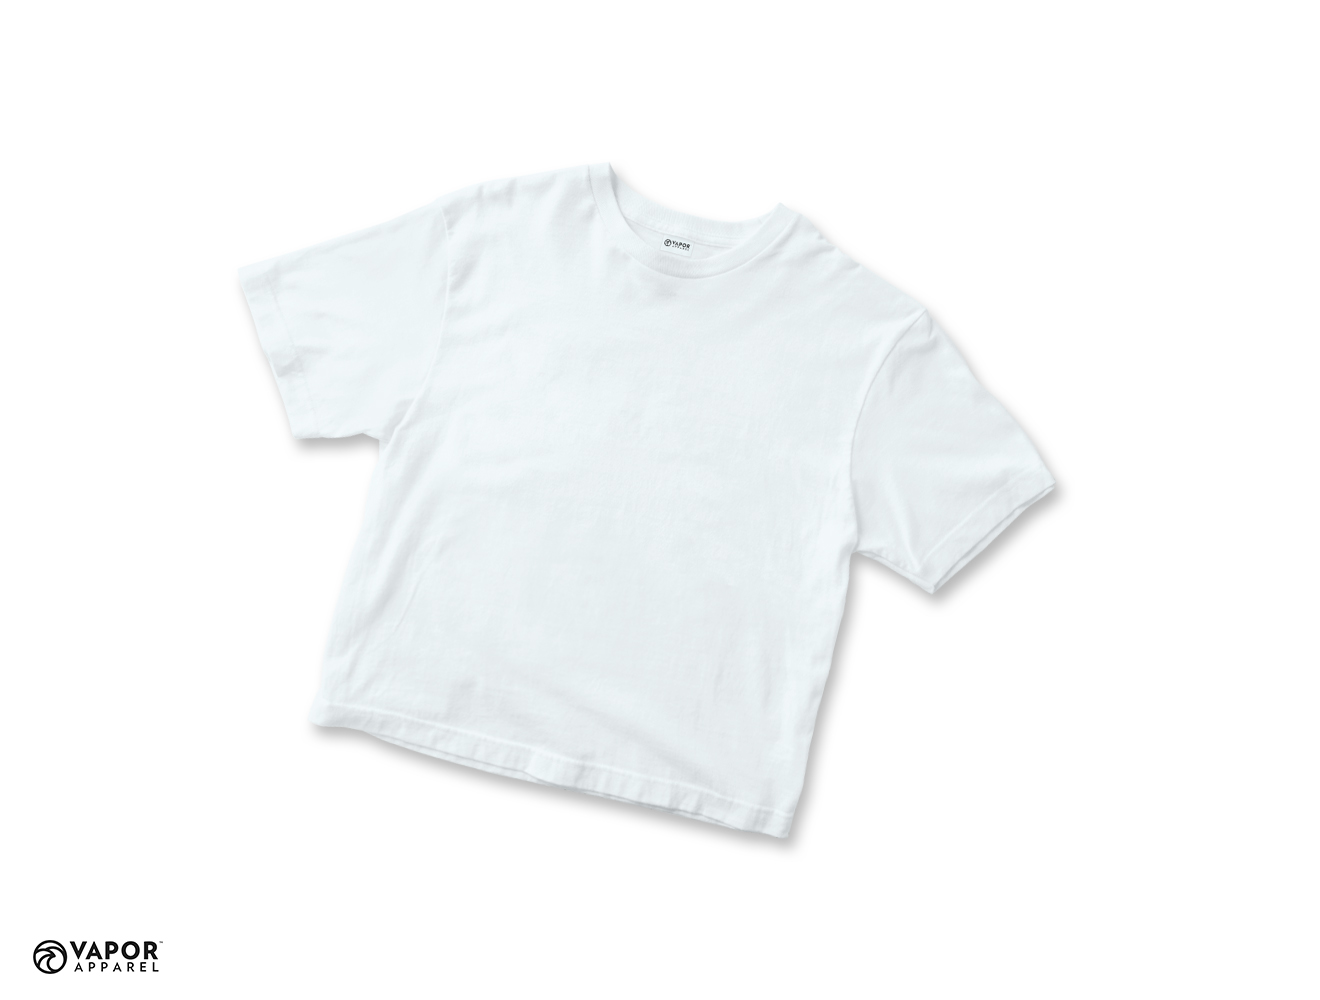 Vapor Basic Toddler T-Shirt White - 92